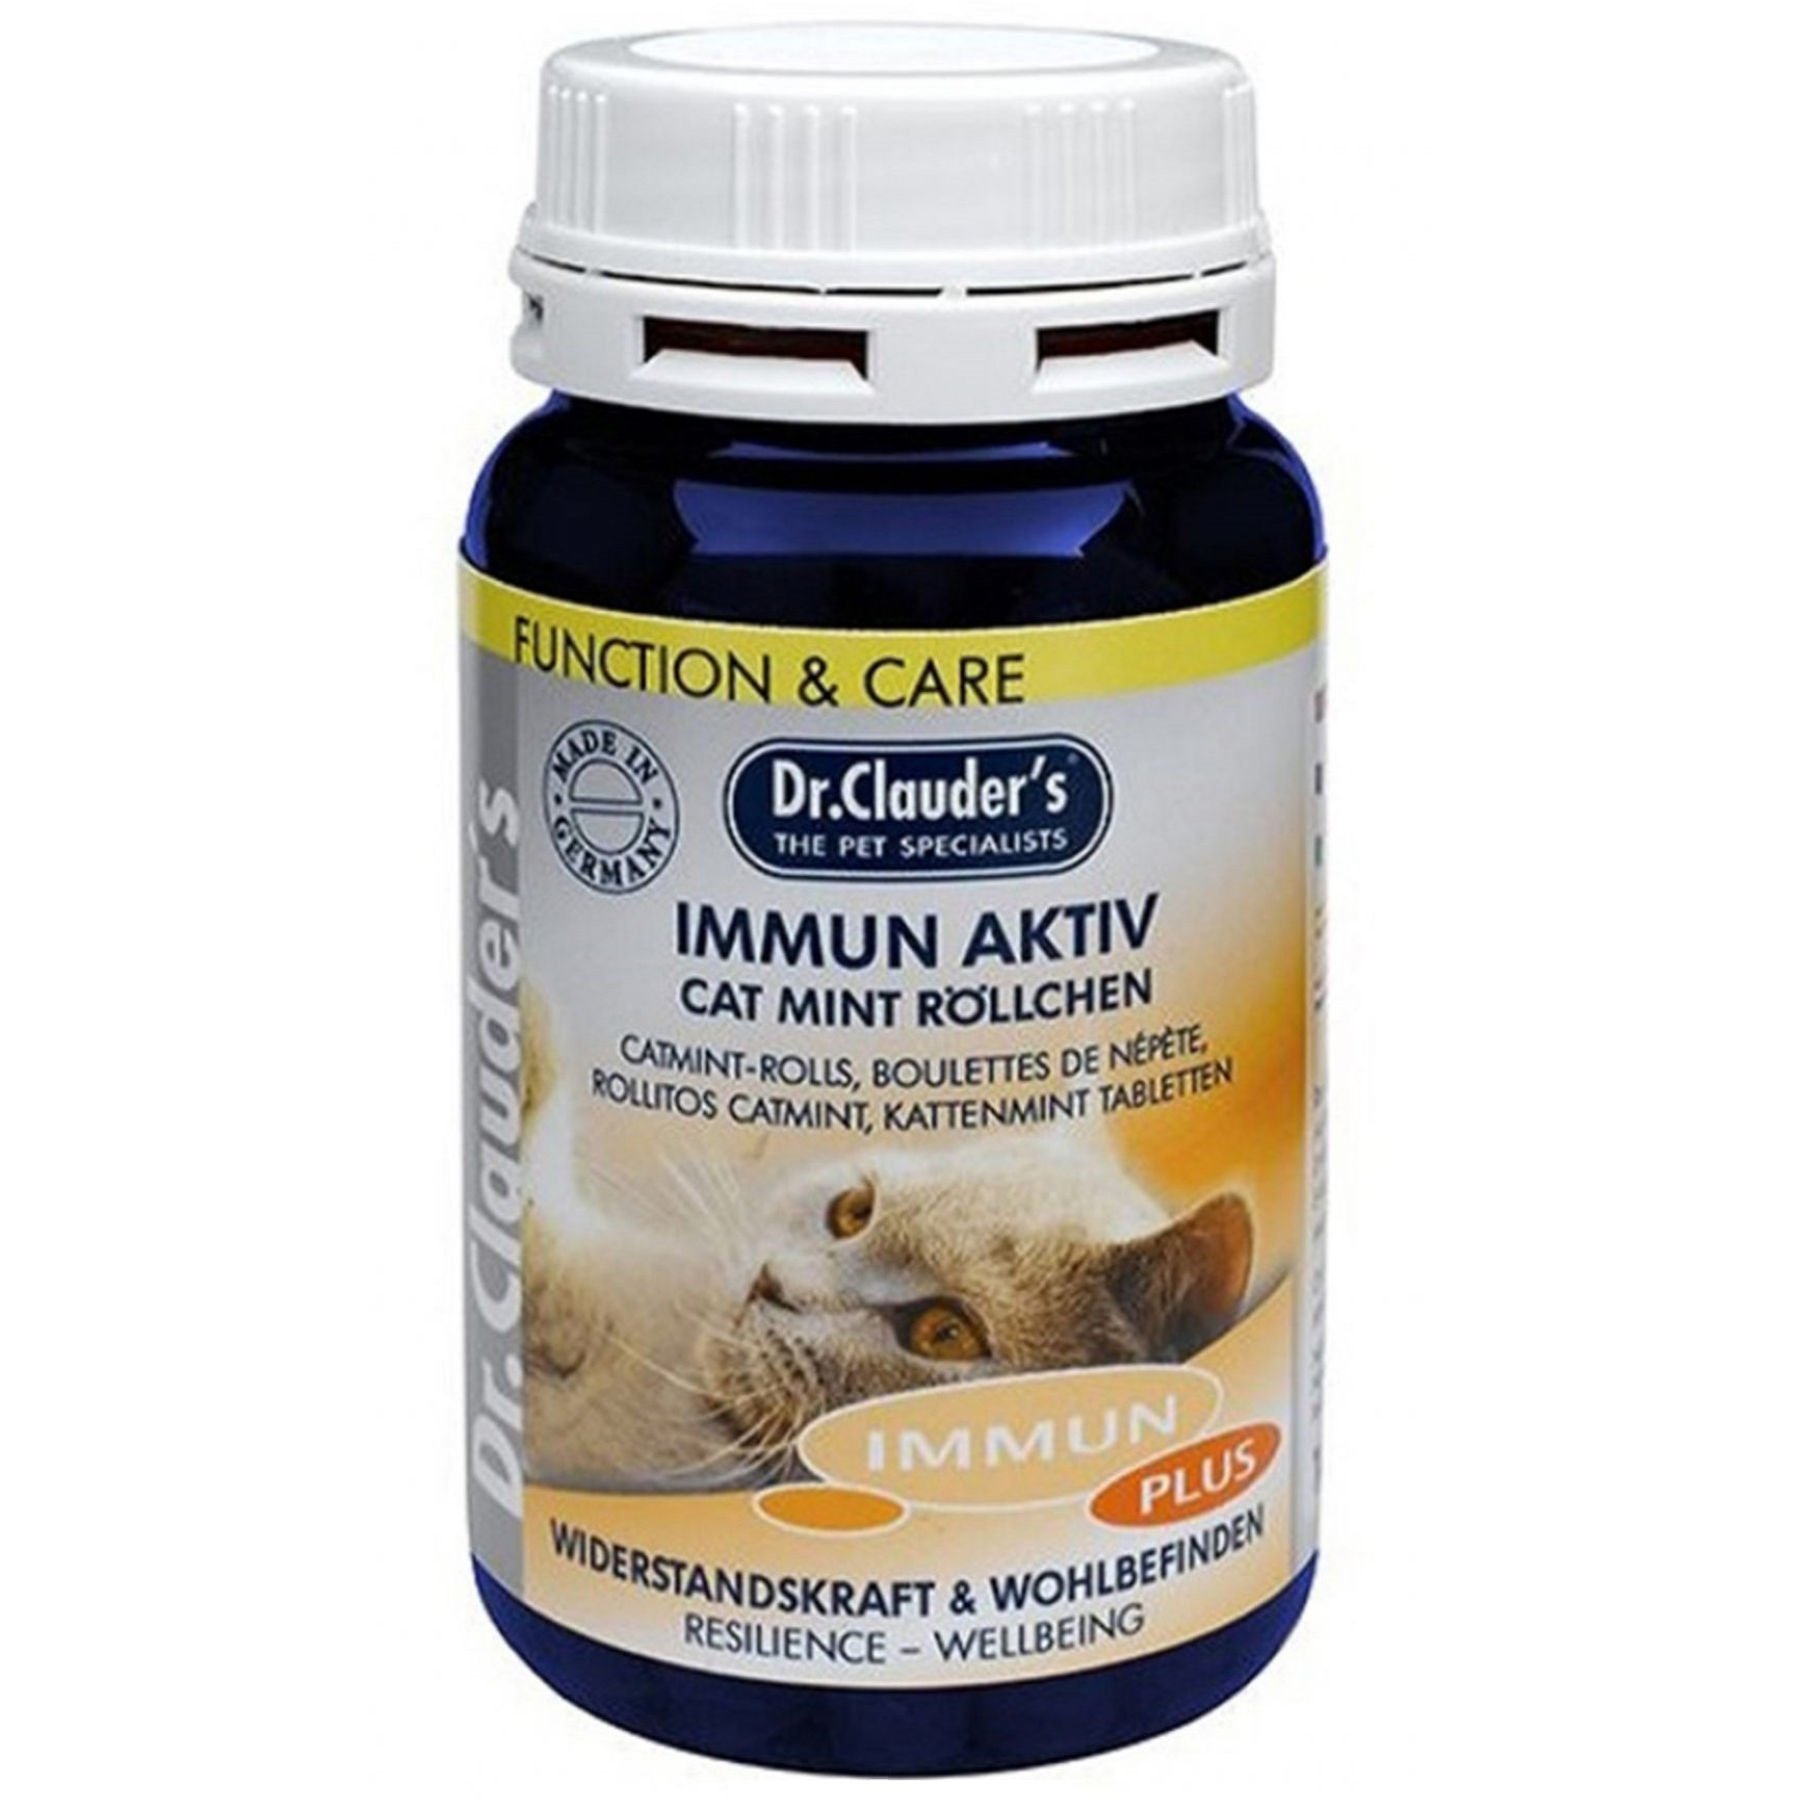 Витаминно-минеральный комплекс для кошек Dr.Clauder's Immun Acitve Cat Mint Rolls с кошачьей мятой, для укрепления иммунитета, 100 г